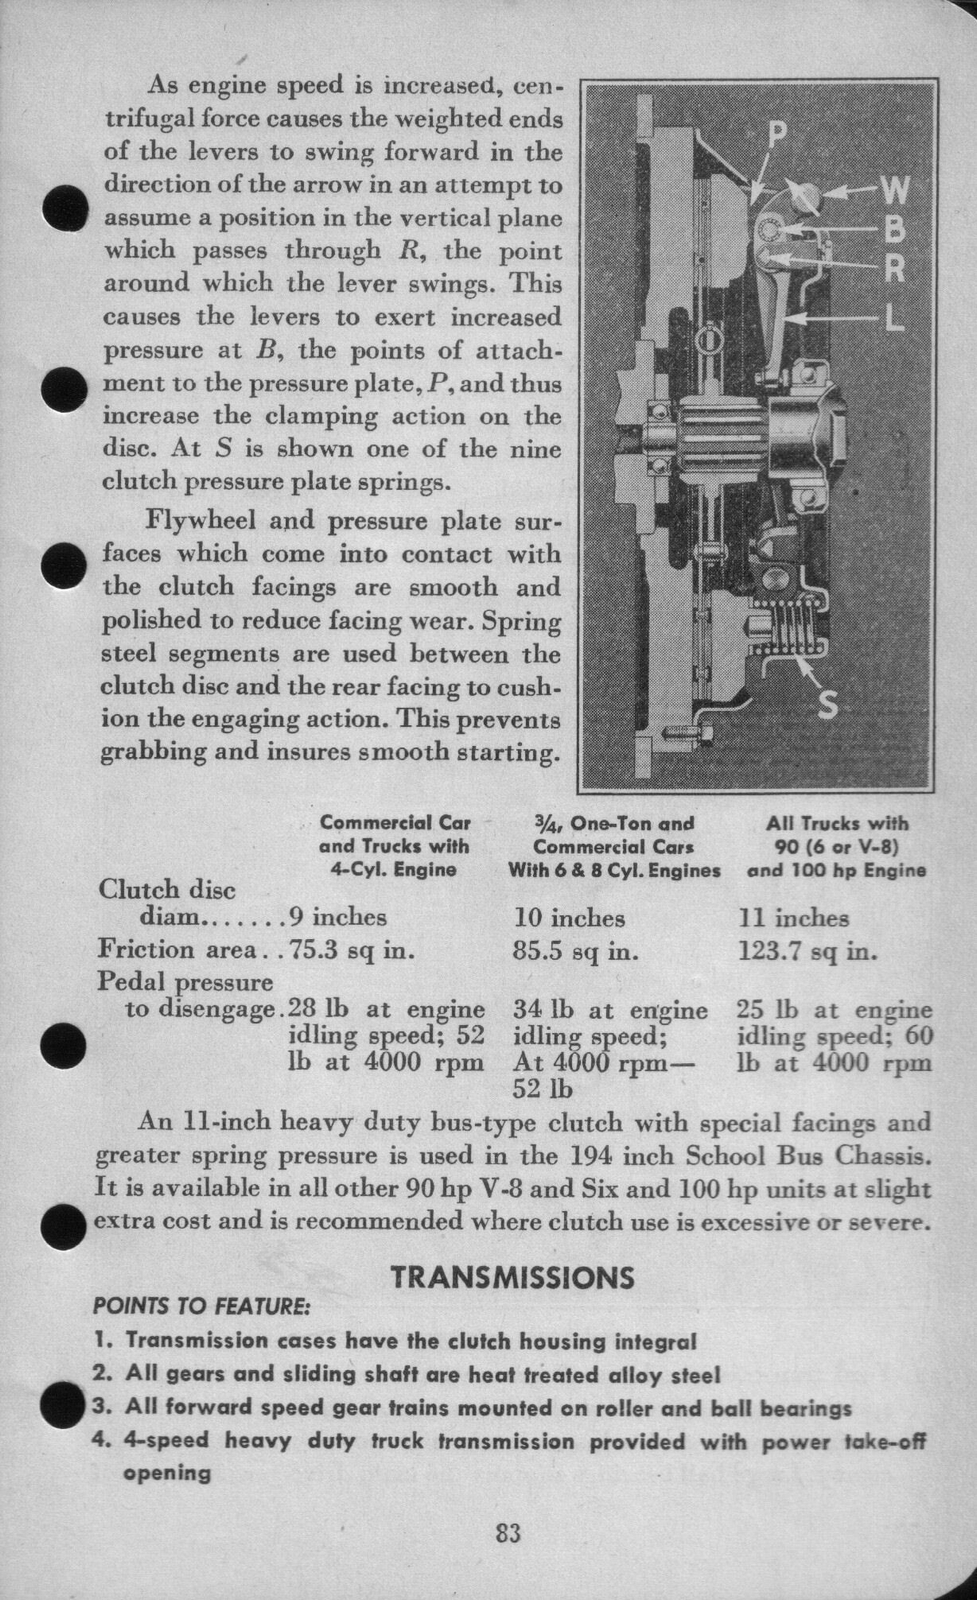 n_1942 Ford Salesmans Reference Manual-083.jpg